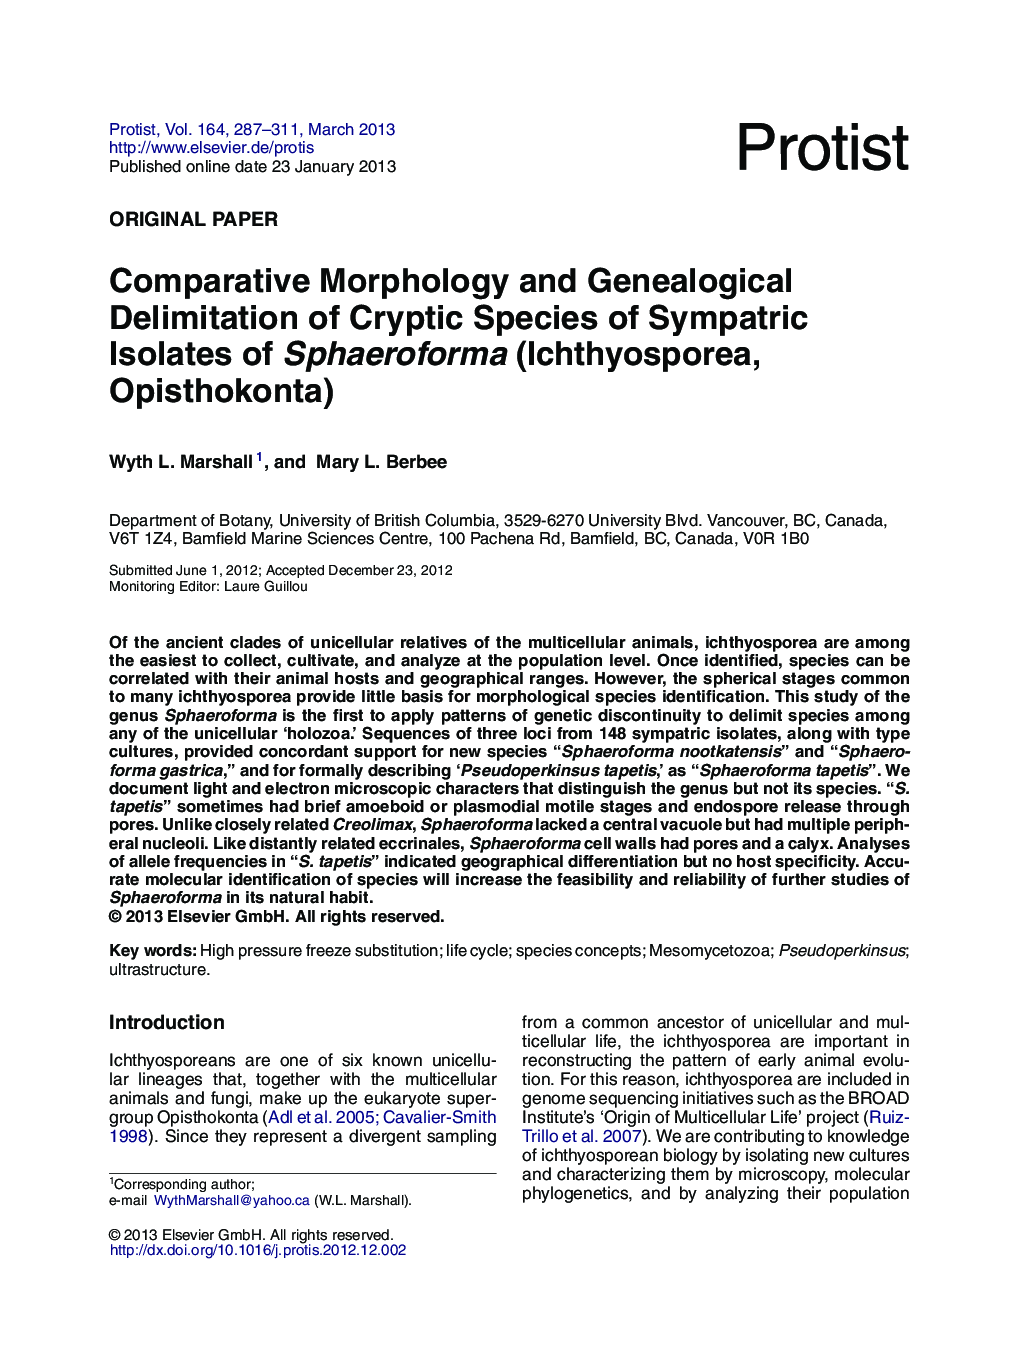 Comparative Morphology and Genealogical Delimitation of Cryptic Species of Sympatric Isolates of Sphaeroforma (Ichthyosporea, Opisthokonta)